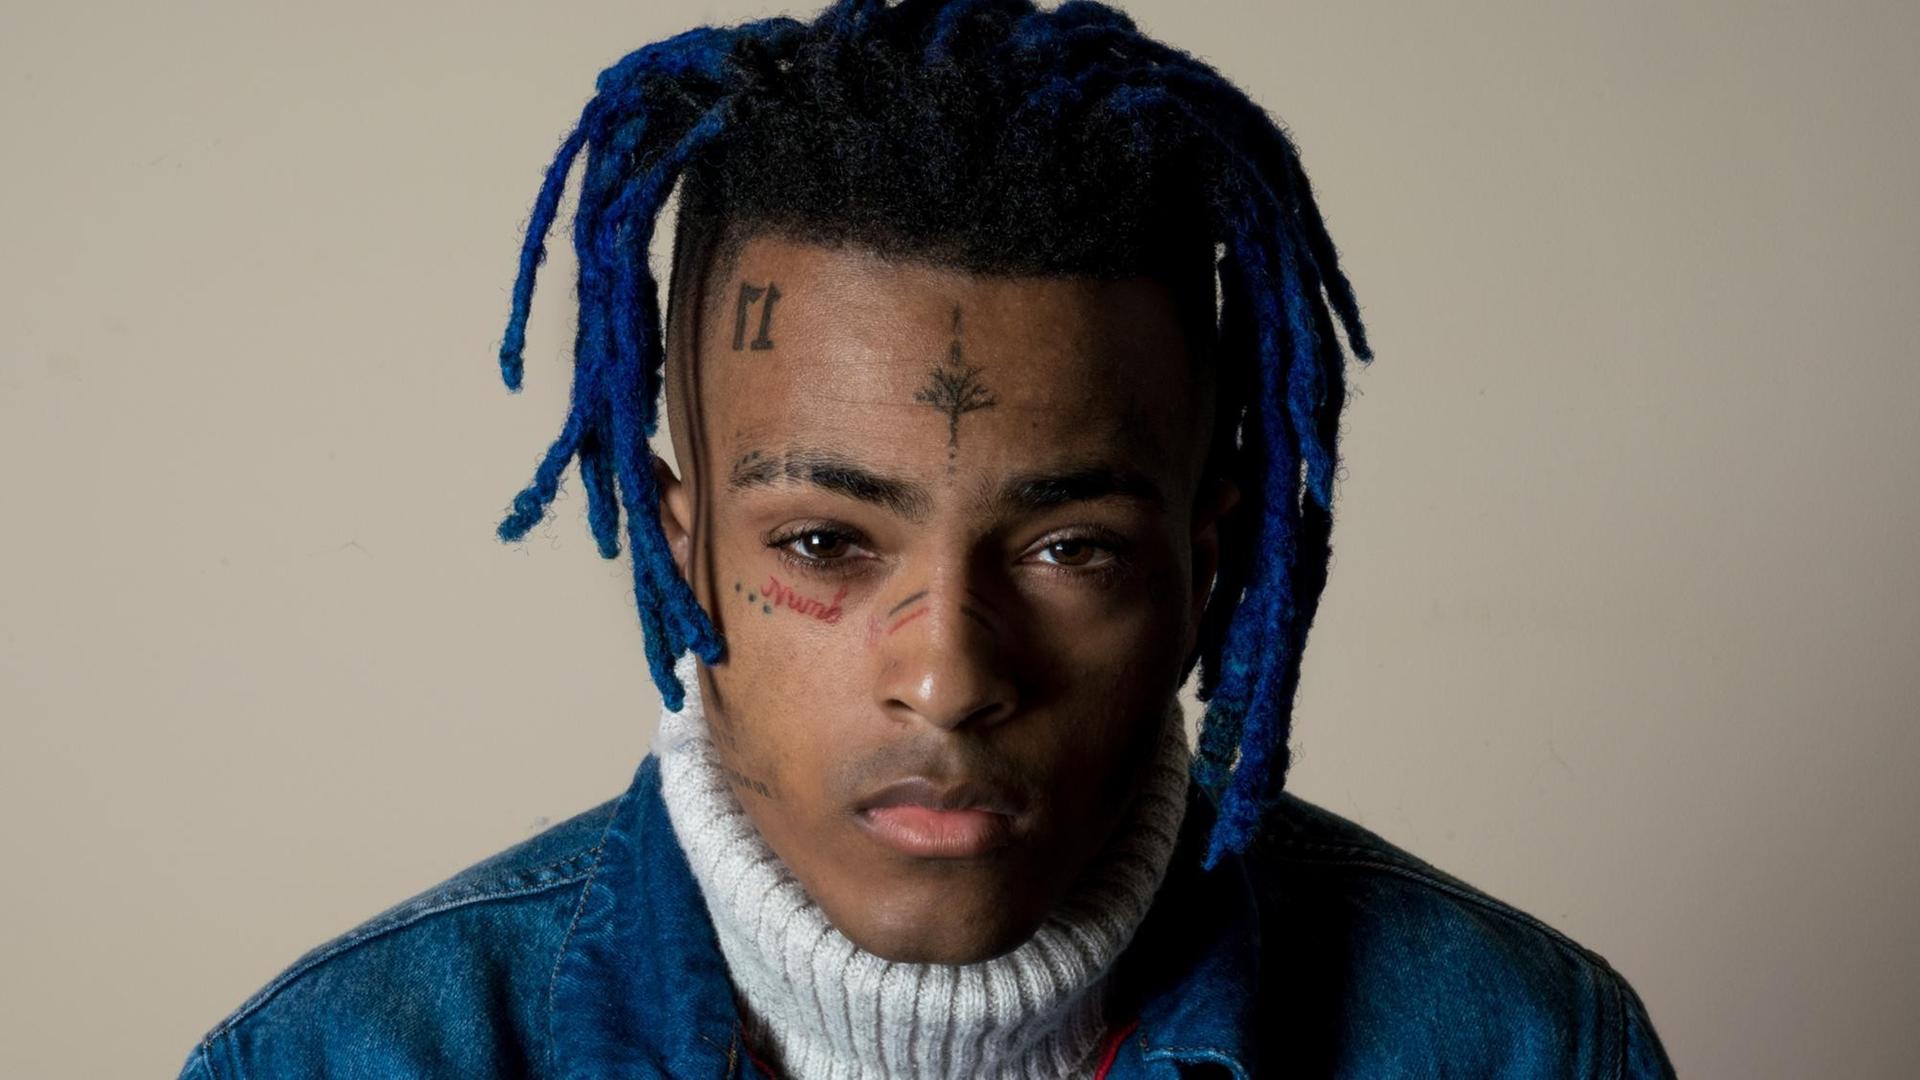 Der Rapper XXXTentacion mit blauen Rastazöpfen und Tattoos im Gesicht blickt in die Kamera